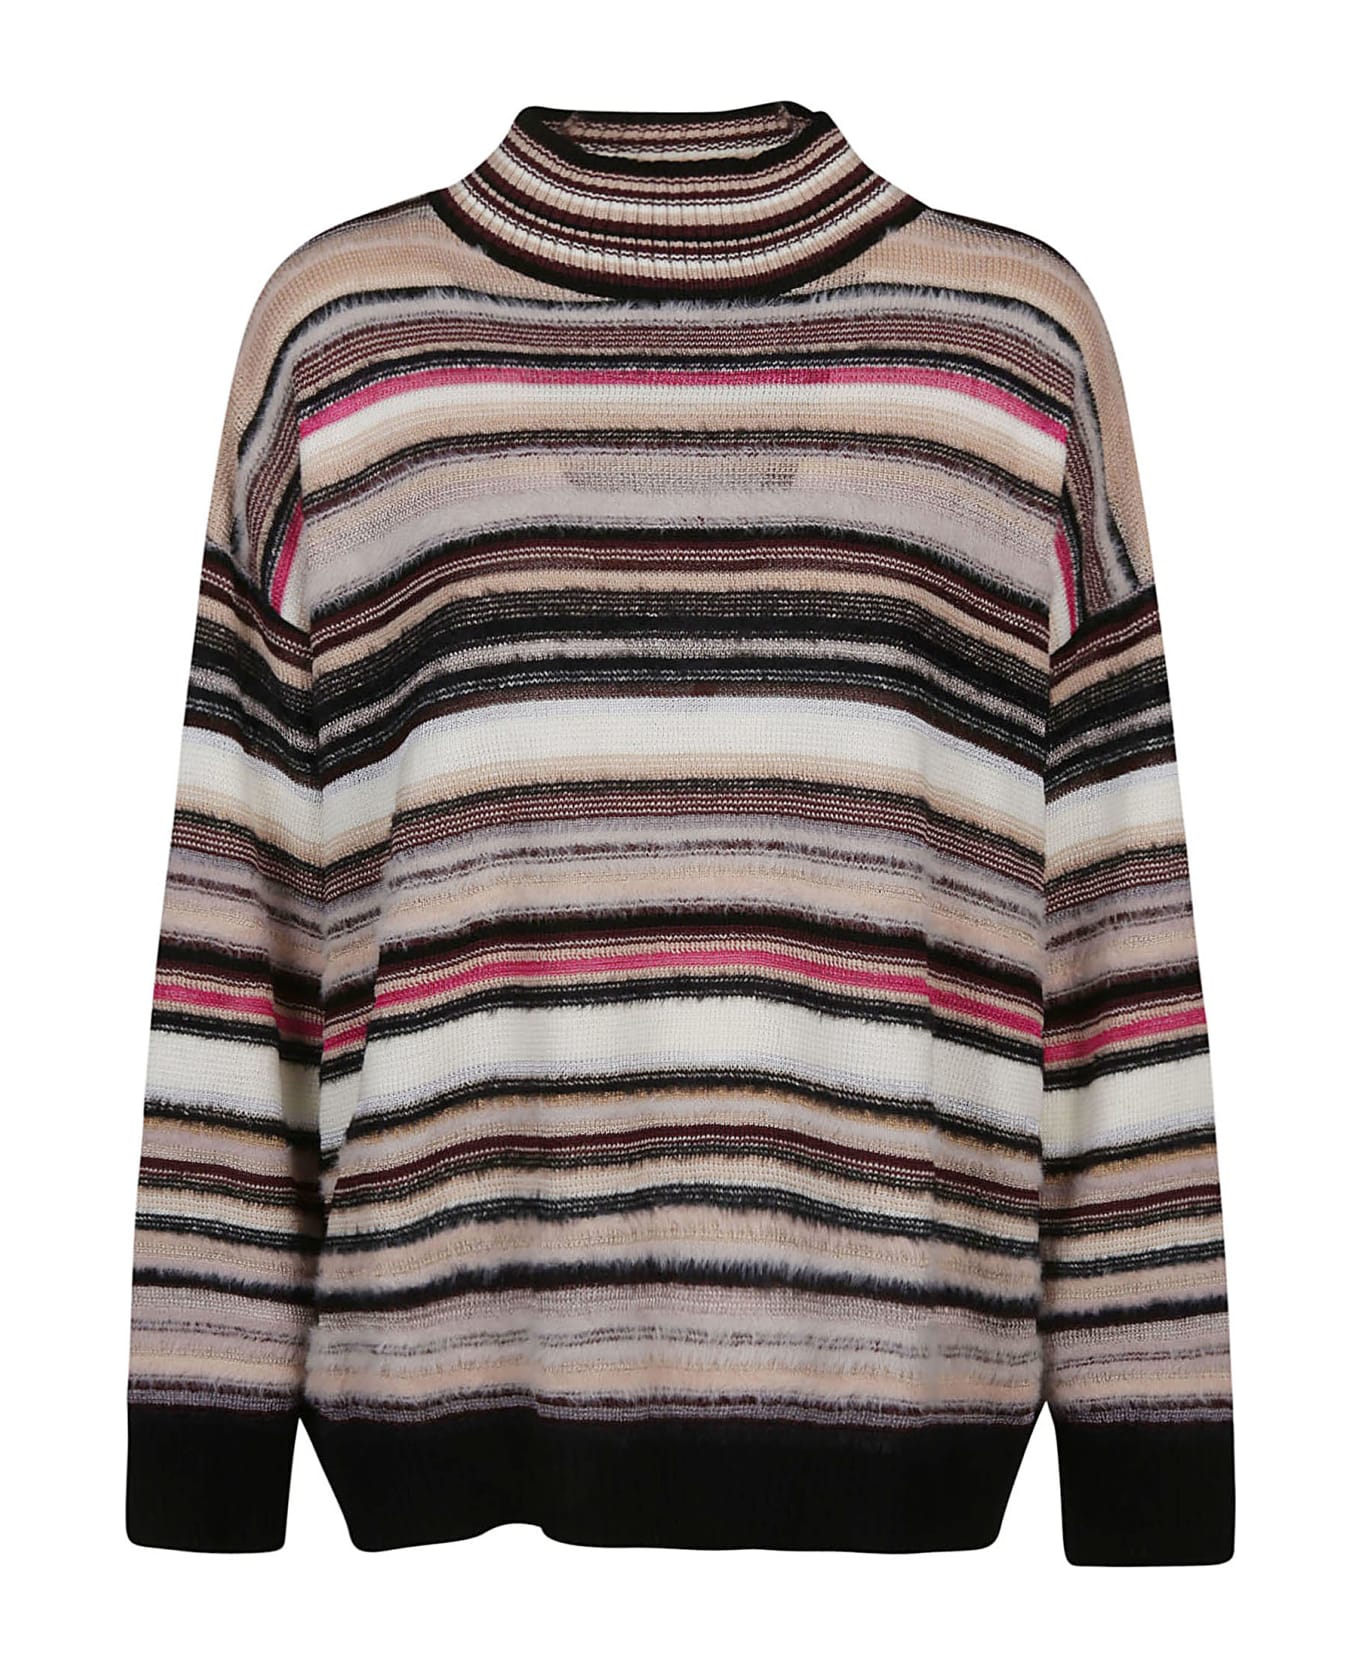 Missoni Turtle Neck Sweater - W Multicolor Beige/fucsia/nero ニットウェア